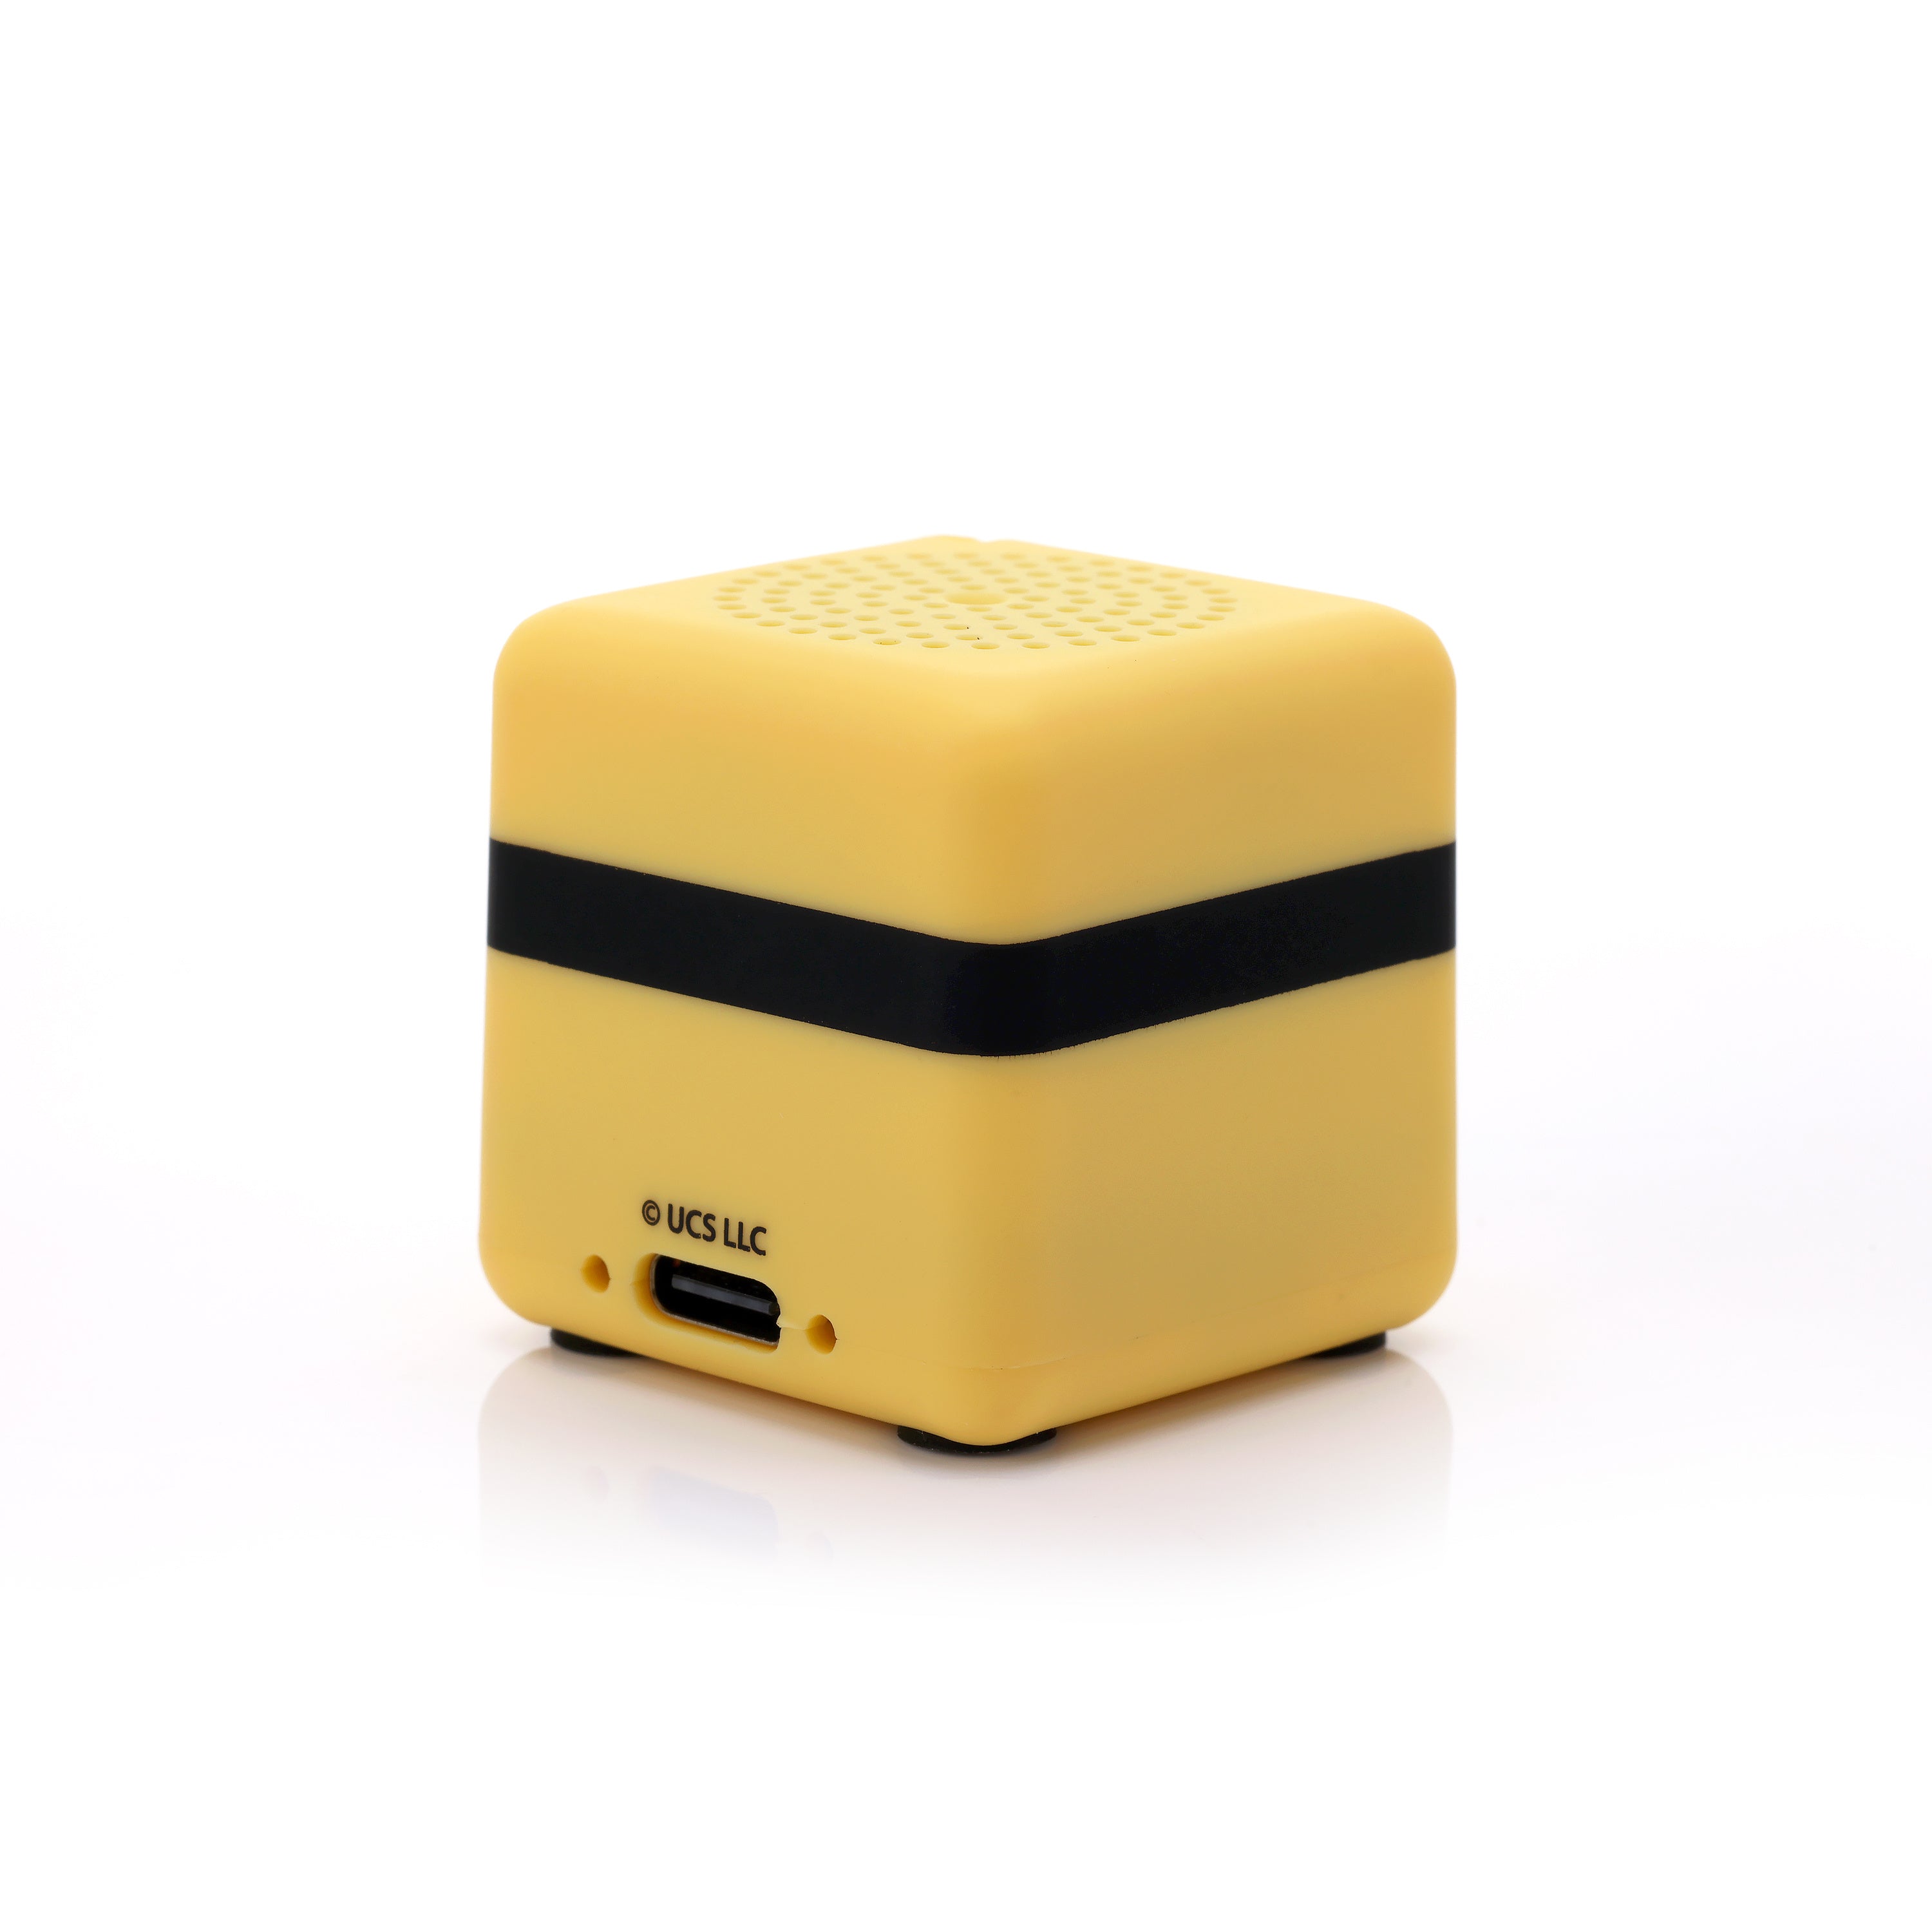 Bitty Box Minions Bluetooth Speaker